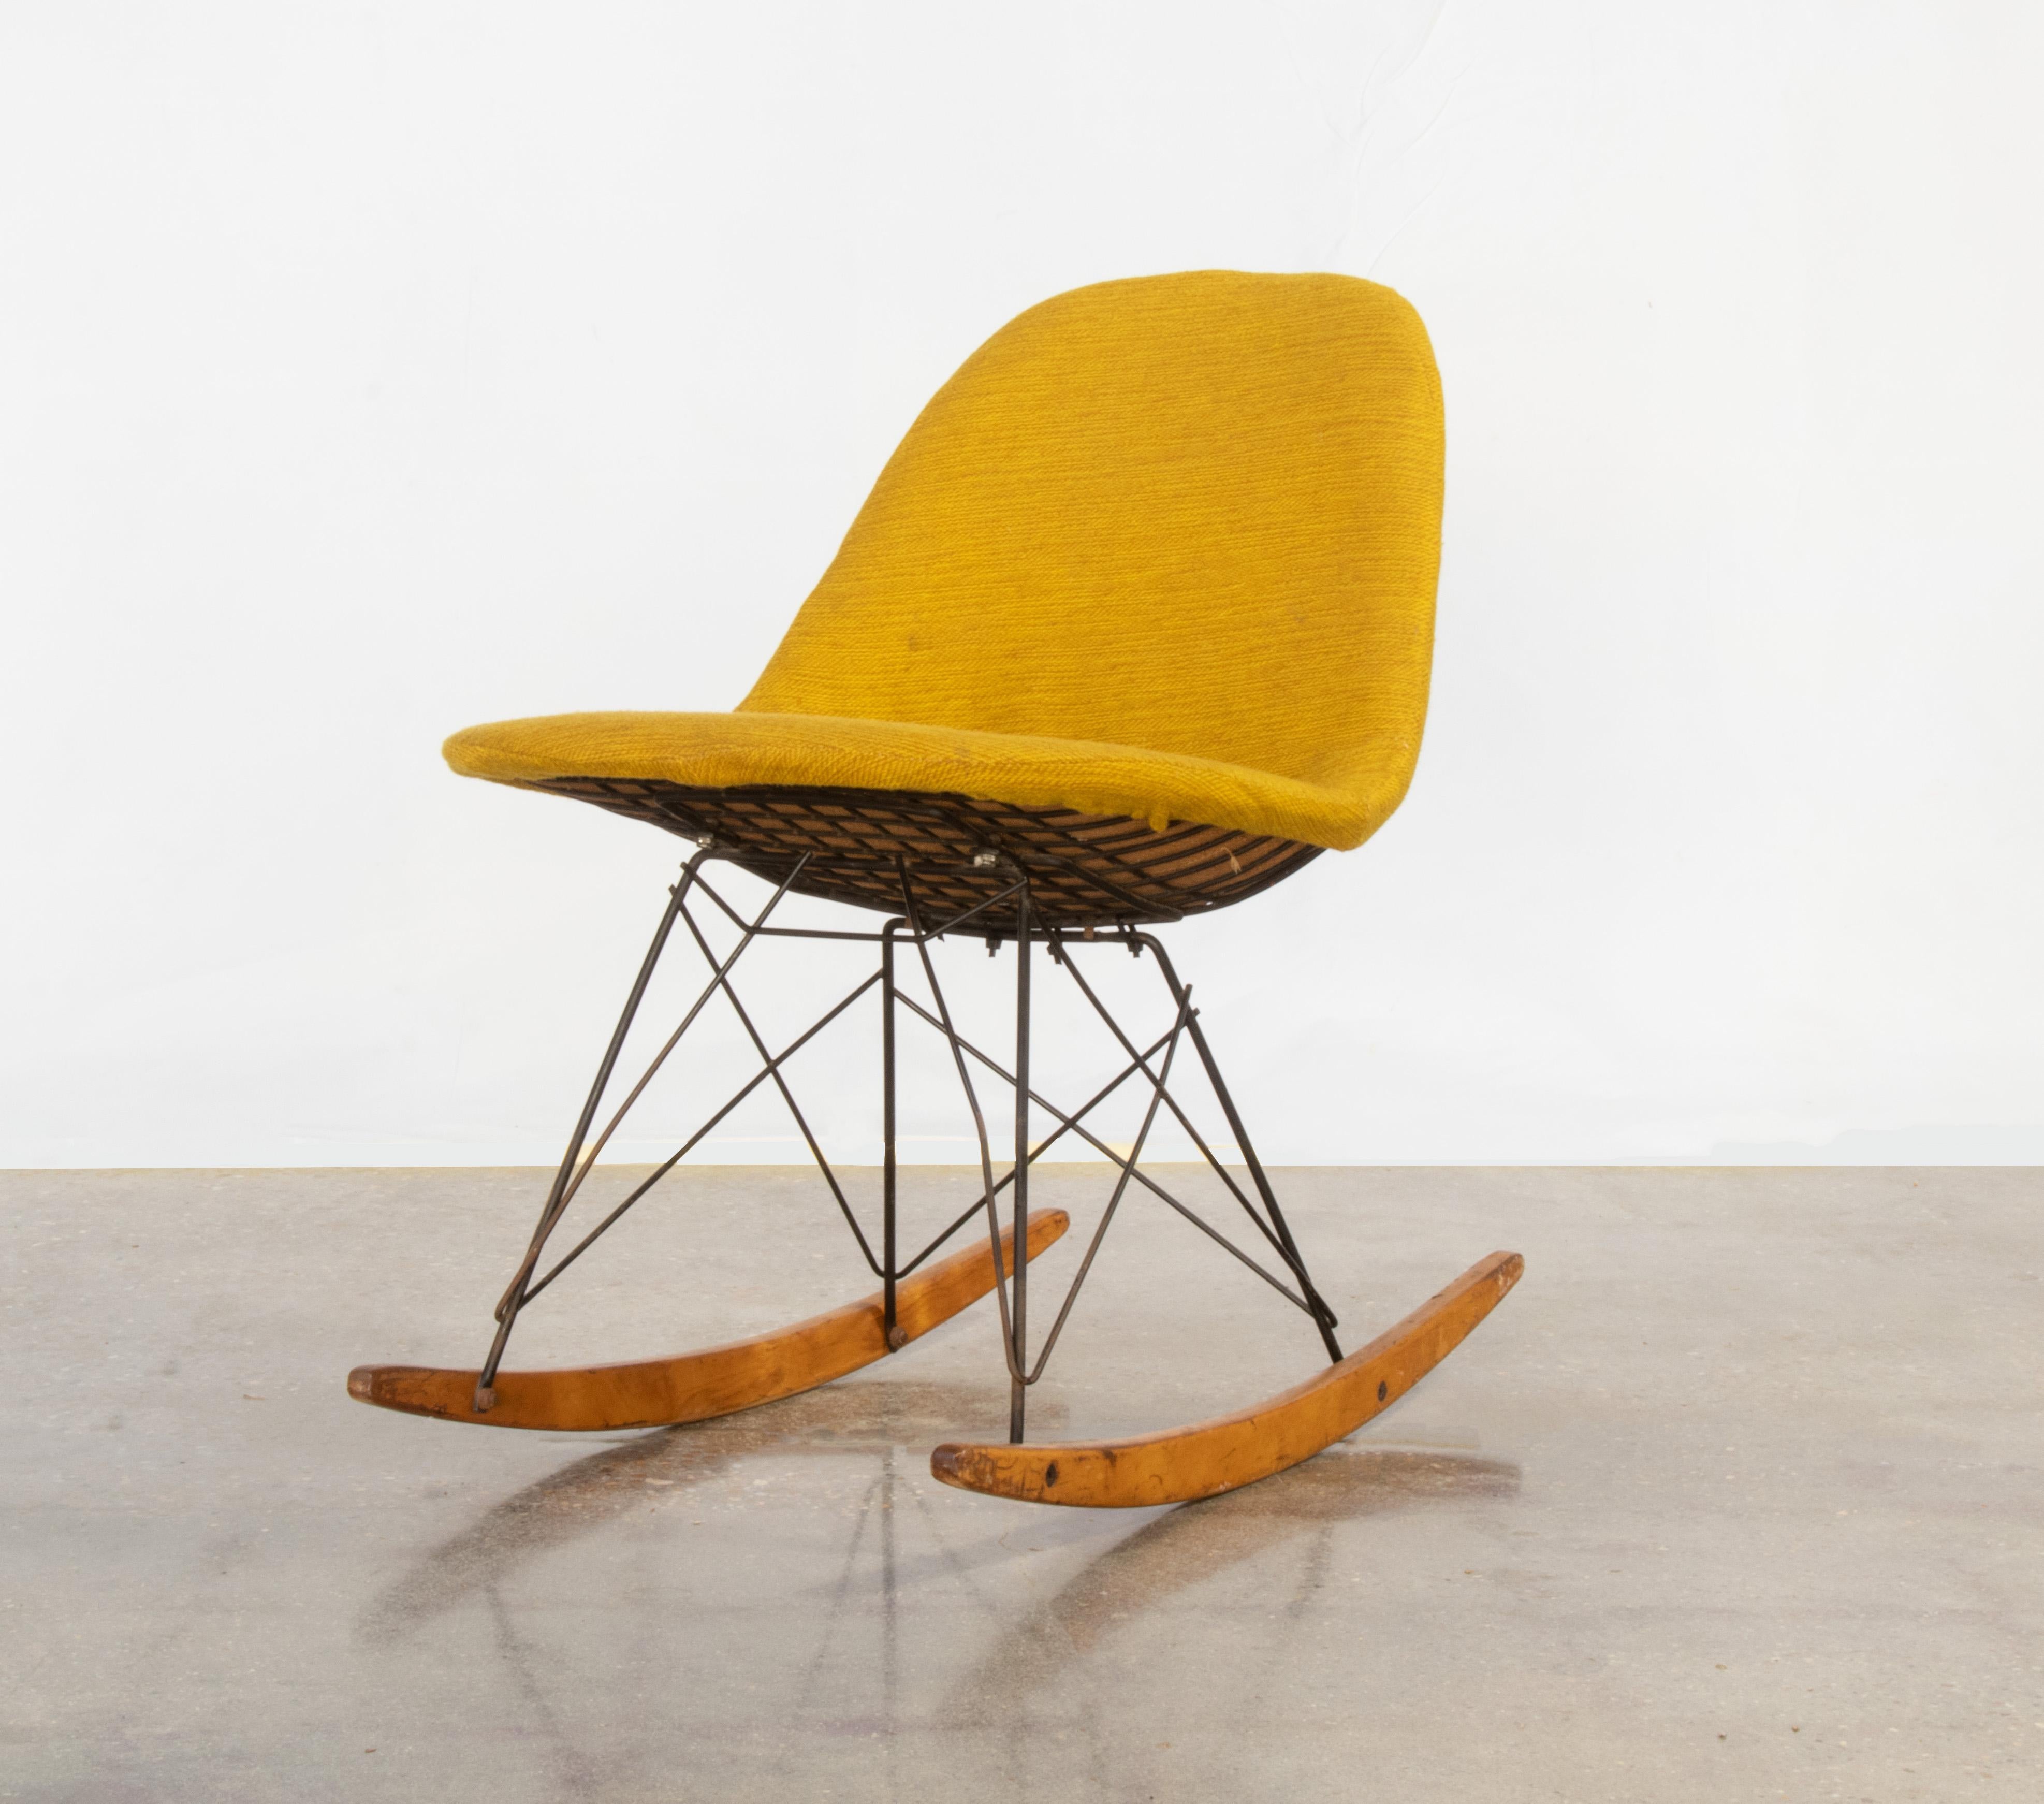 Chaise d'appoint emblématique RKR Rocking Wire, conçue par Charles et Ray Eames pour Herman Miller. Cette chaise conserve ses patins en bouleau d'origine et son tissu en hopsak jaune d'origine. Le cadre en fer noir fait ressortir le jaune vif.  Il